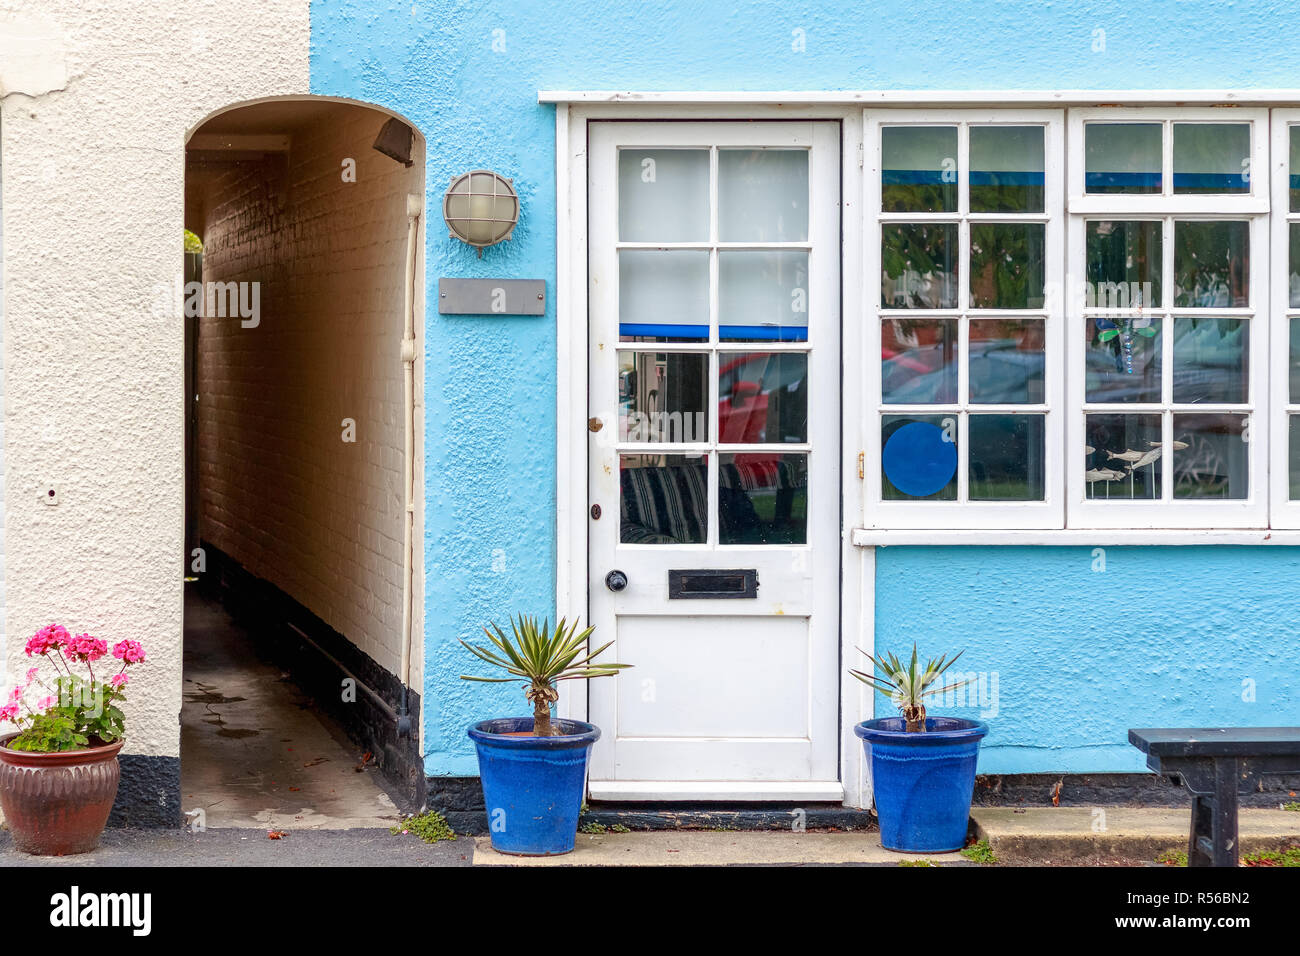 Ferienhaus in Southwold, einem beliebten Badeort in Großbritannien Stockfoto